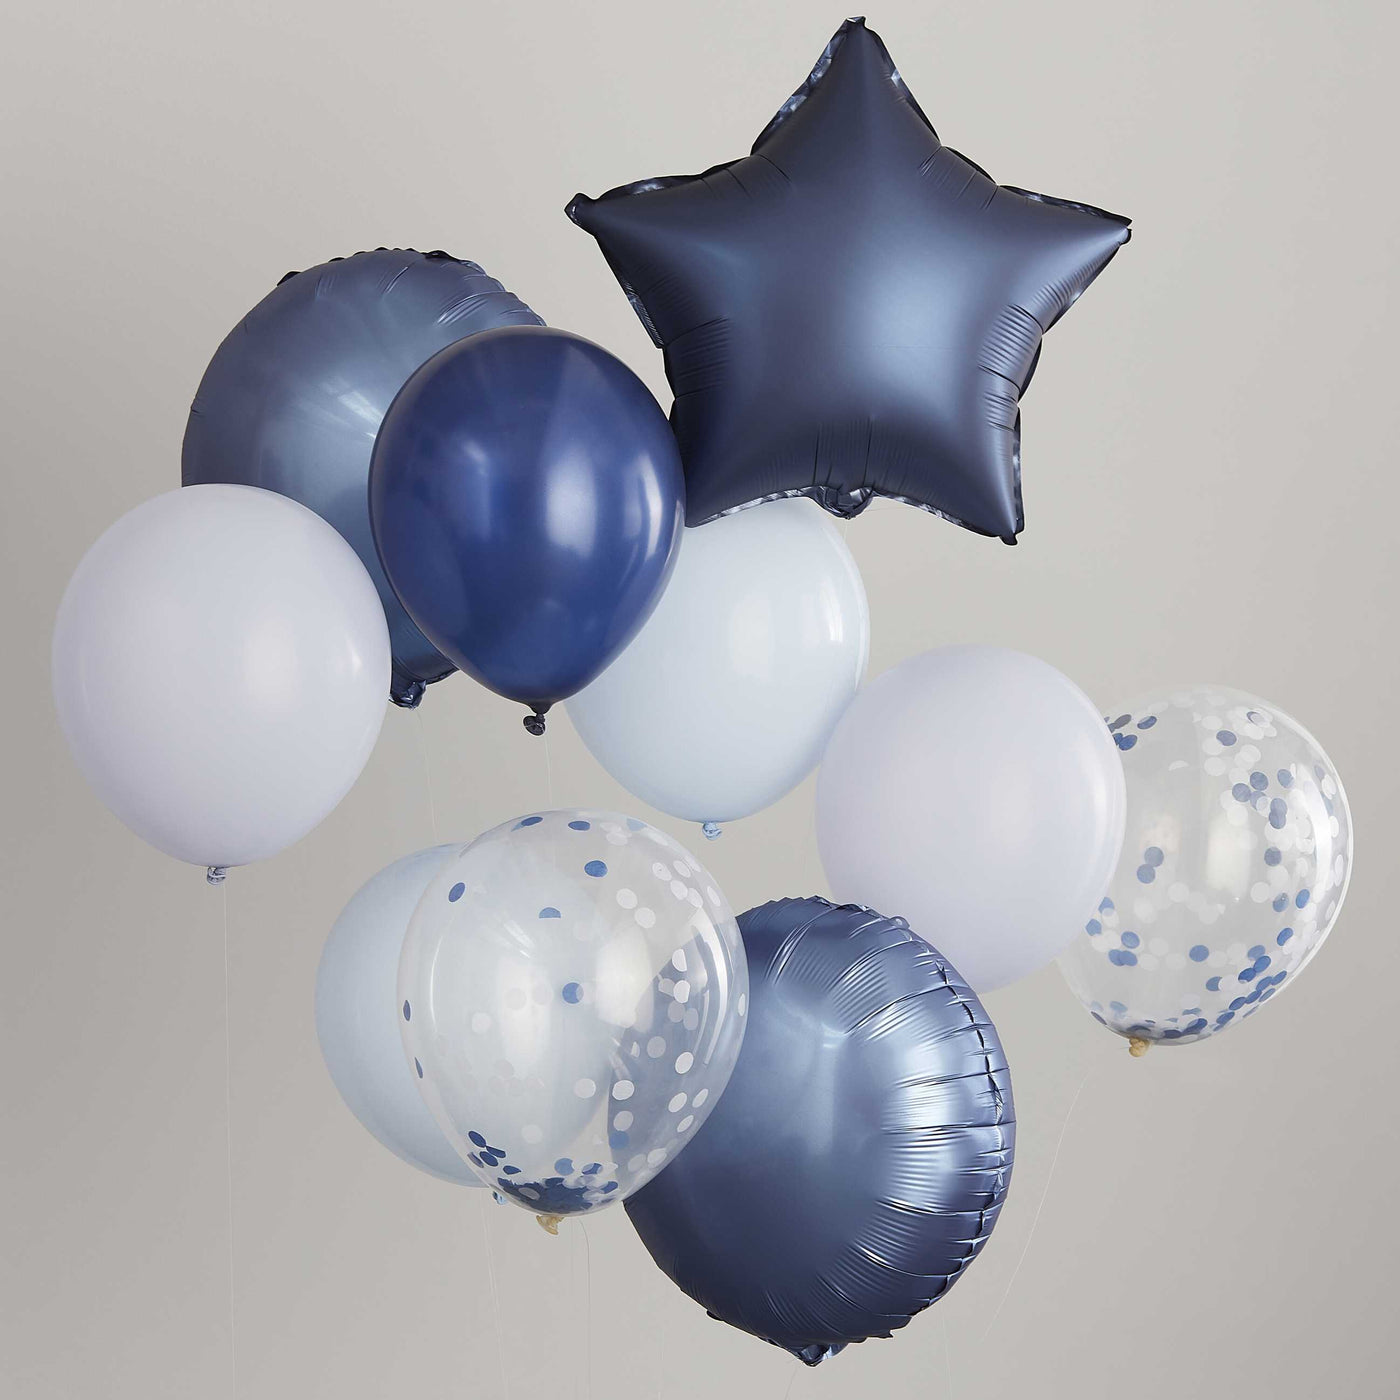 Balões de FUTEBOL Bouquet inflados com hélio <br> (somente Barcelona)